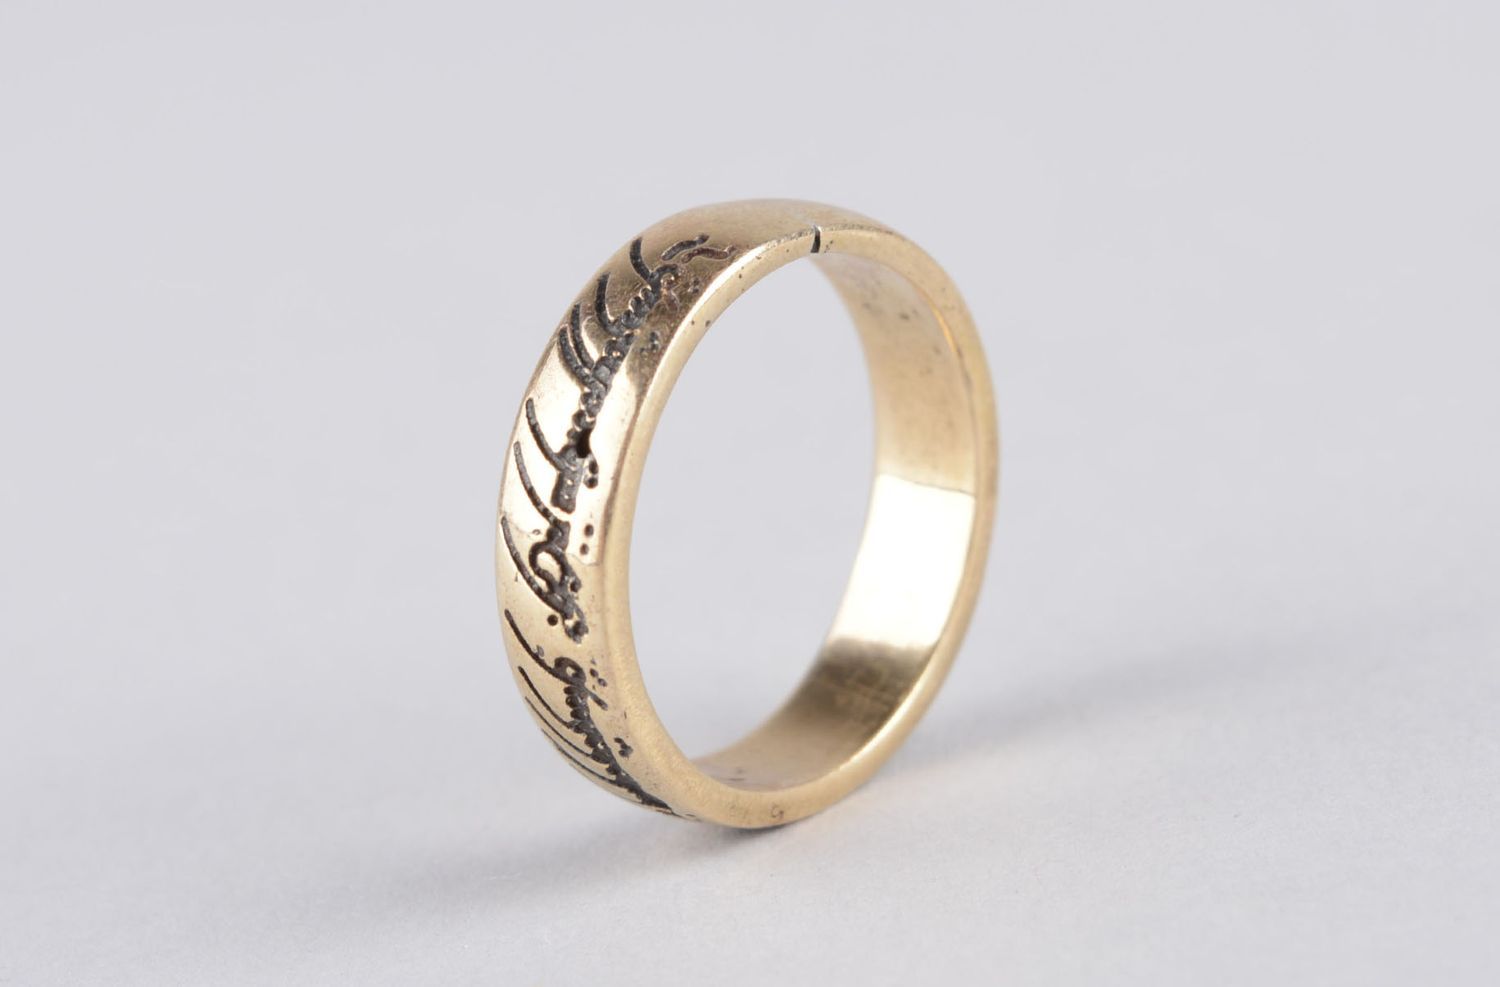 Мужское кольцо ручной работы красивое кольцо цельное мужской аксессуар  фото 3